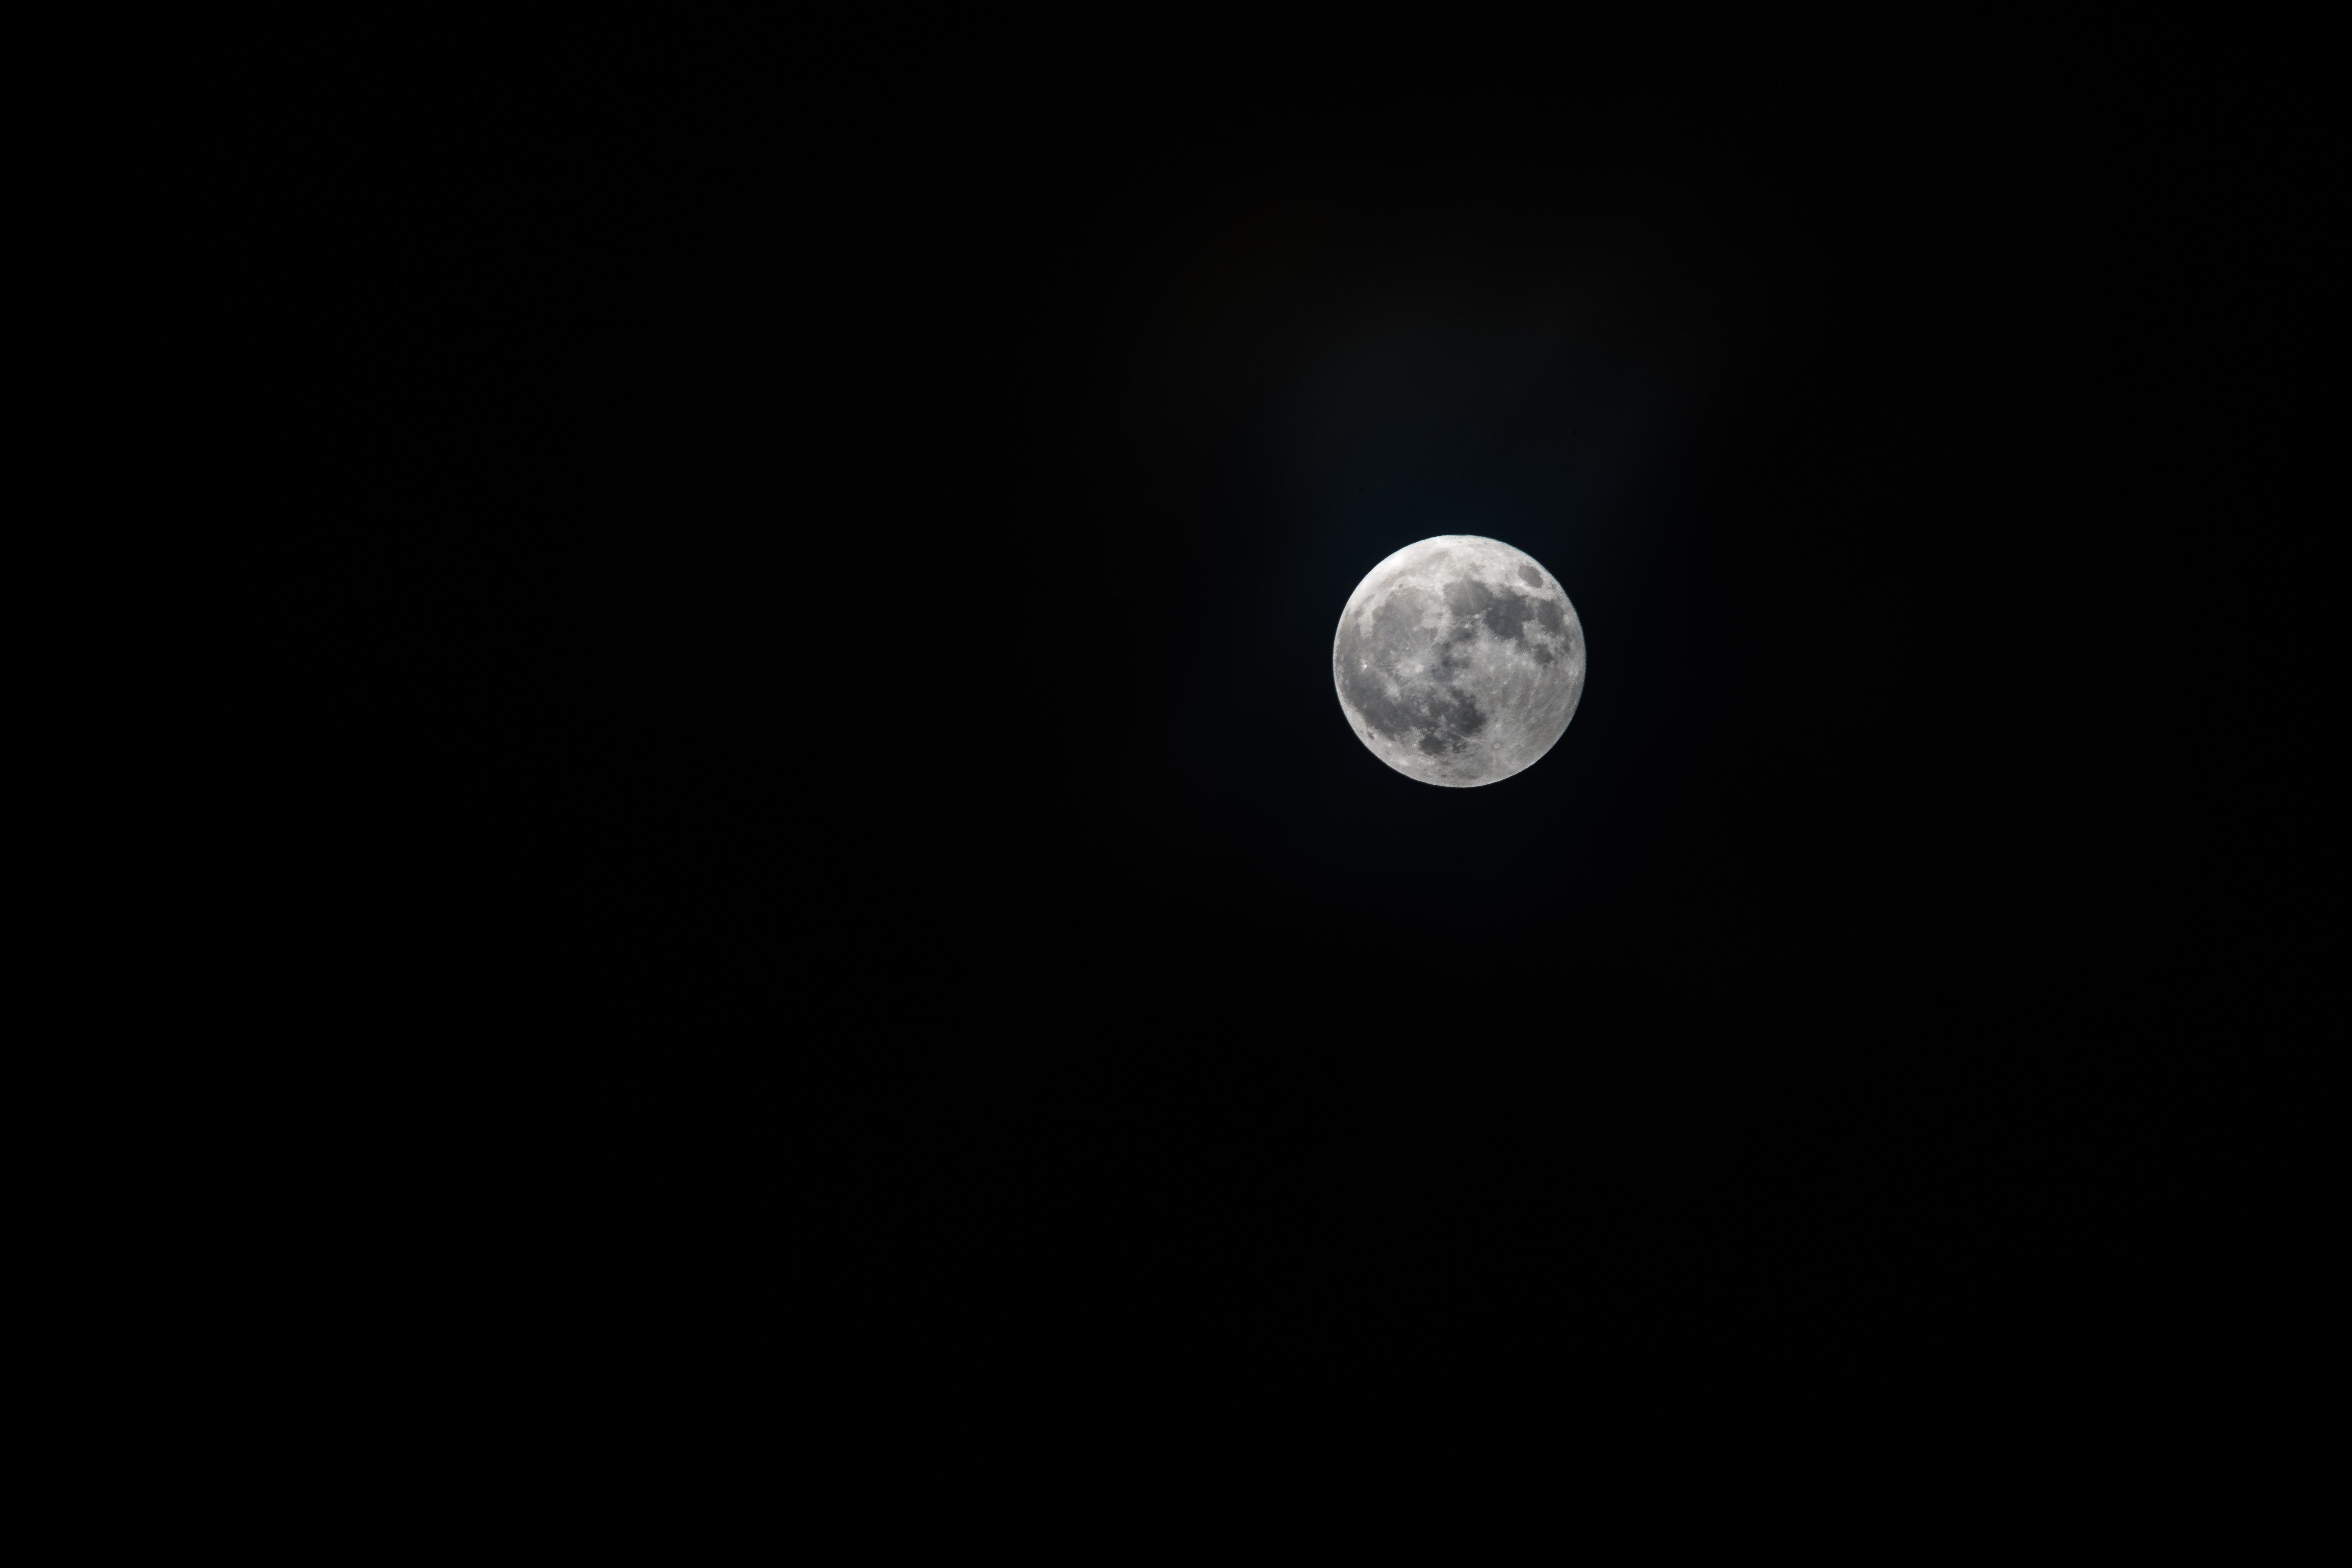 Скачать обои бесплатно Спутник, Небо, Полнолуние, Ночь, Темный, Чб, Луна, Космос картинка на рабочий стол ПК